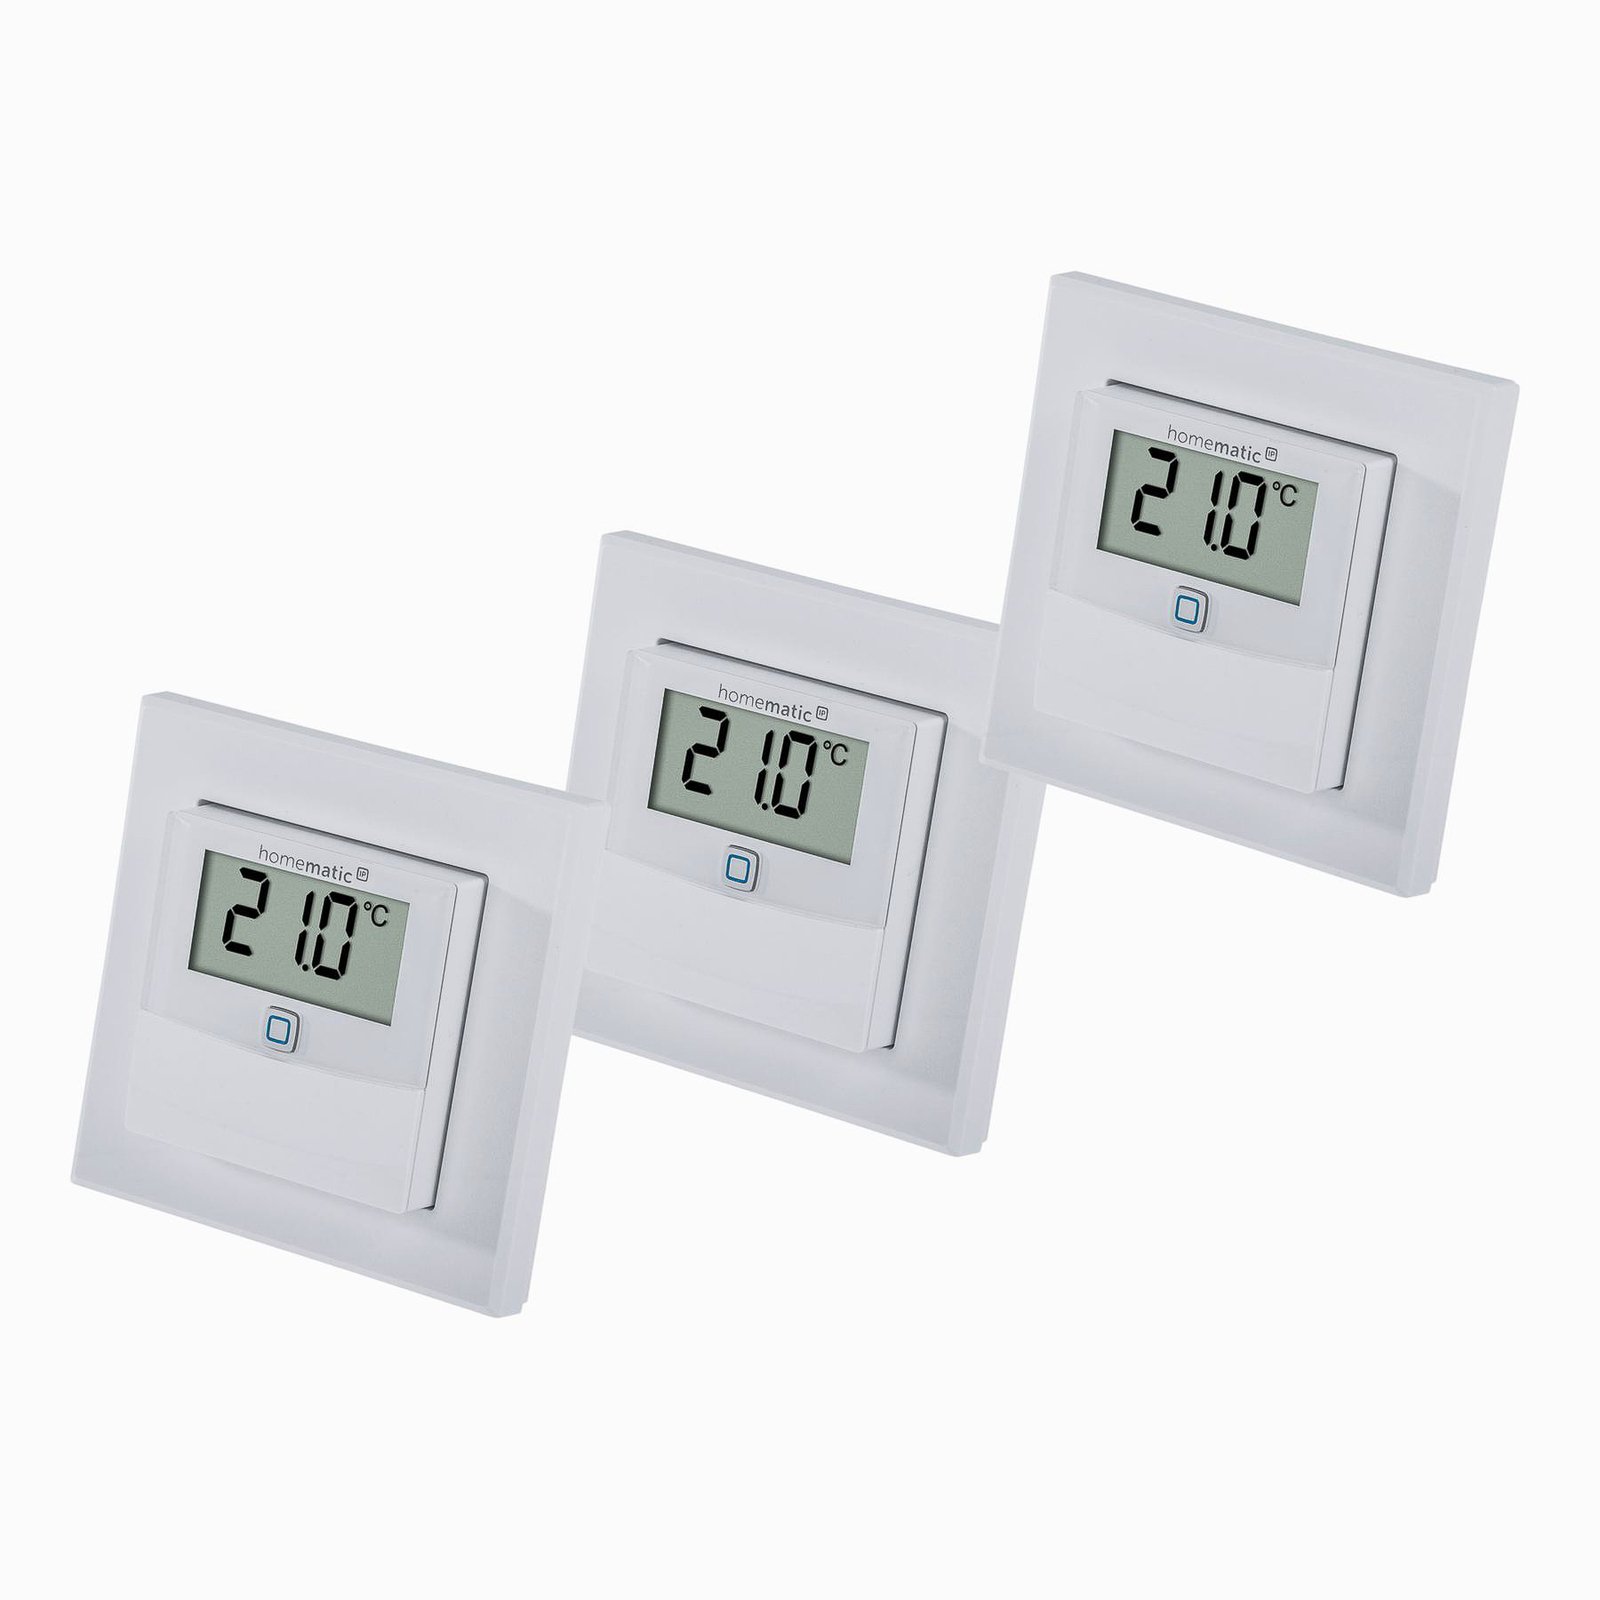 3 x Homematic IP temperature/humidity sensor